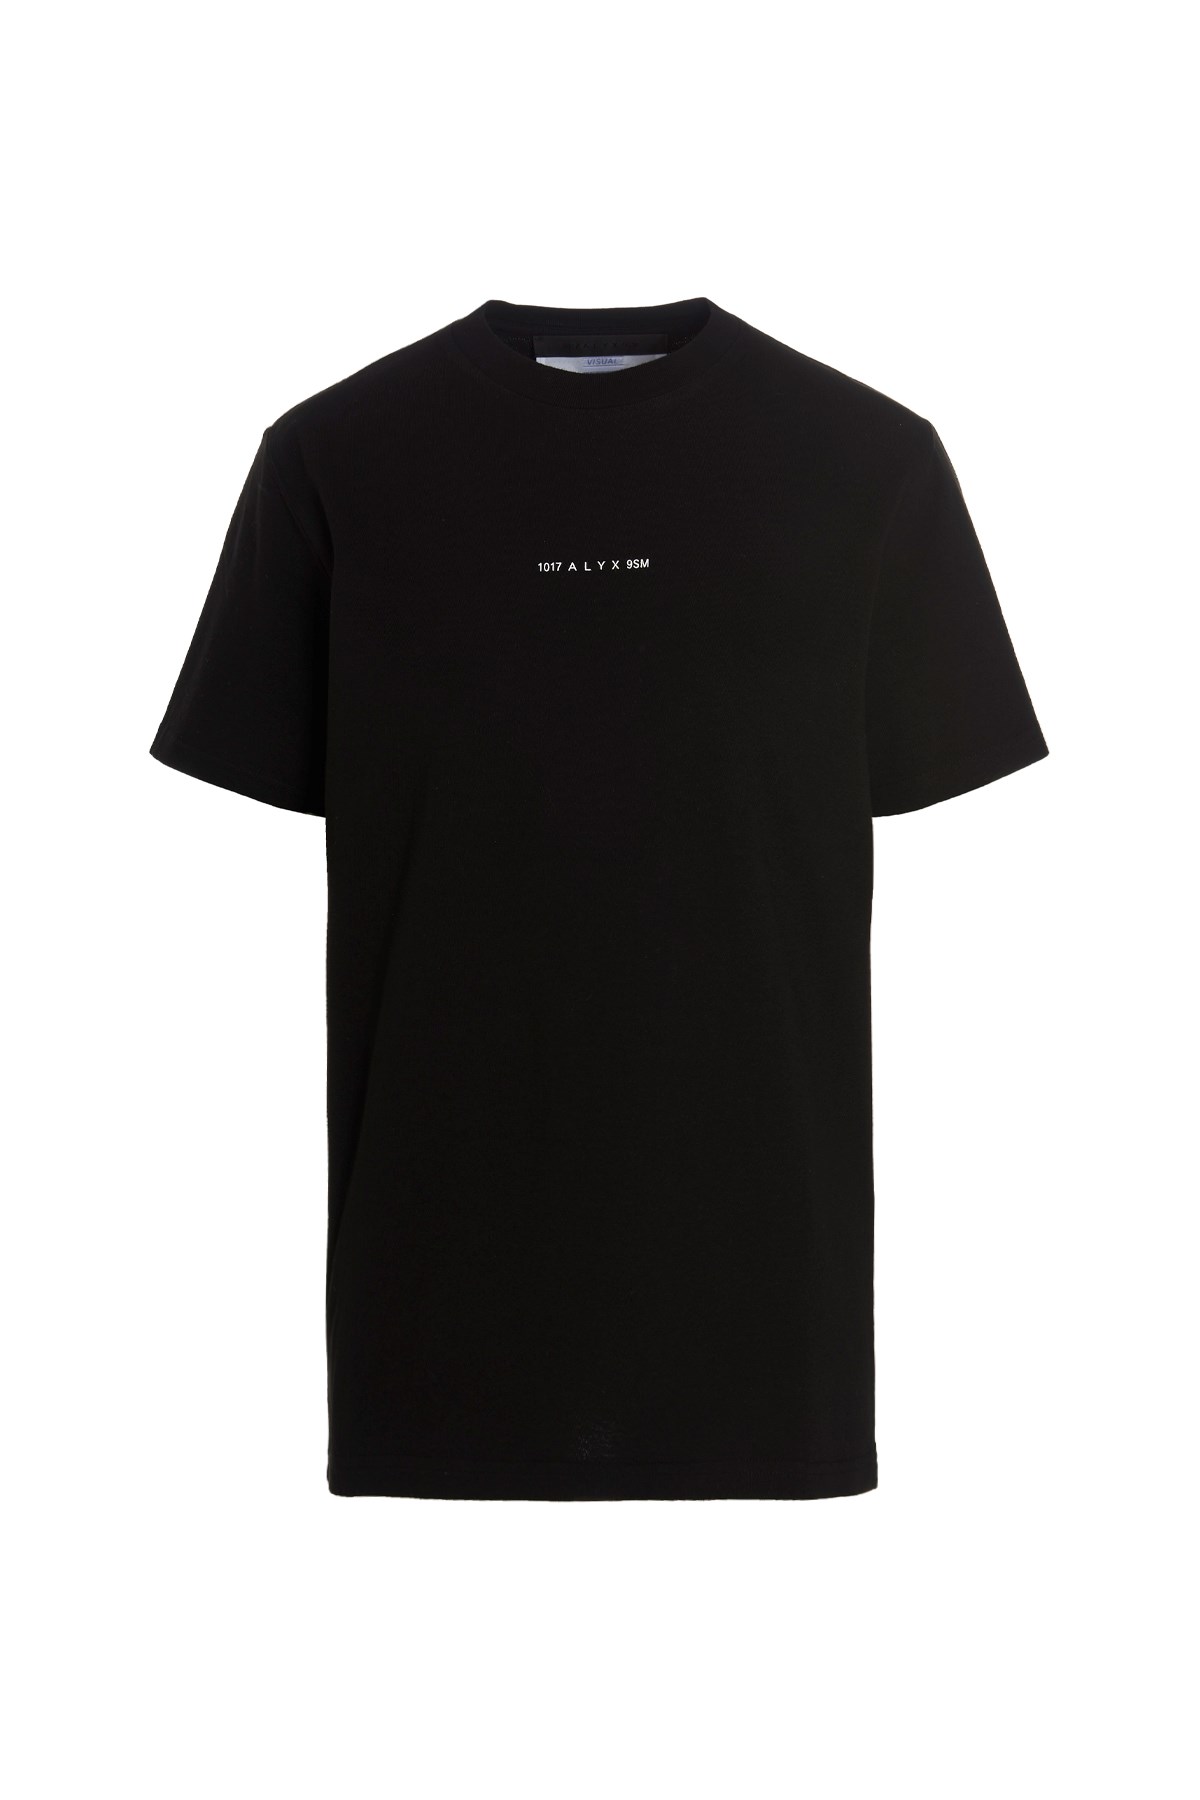 1017-ALYX-9SM ‘Visual' T-Shirt